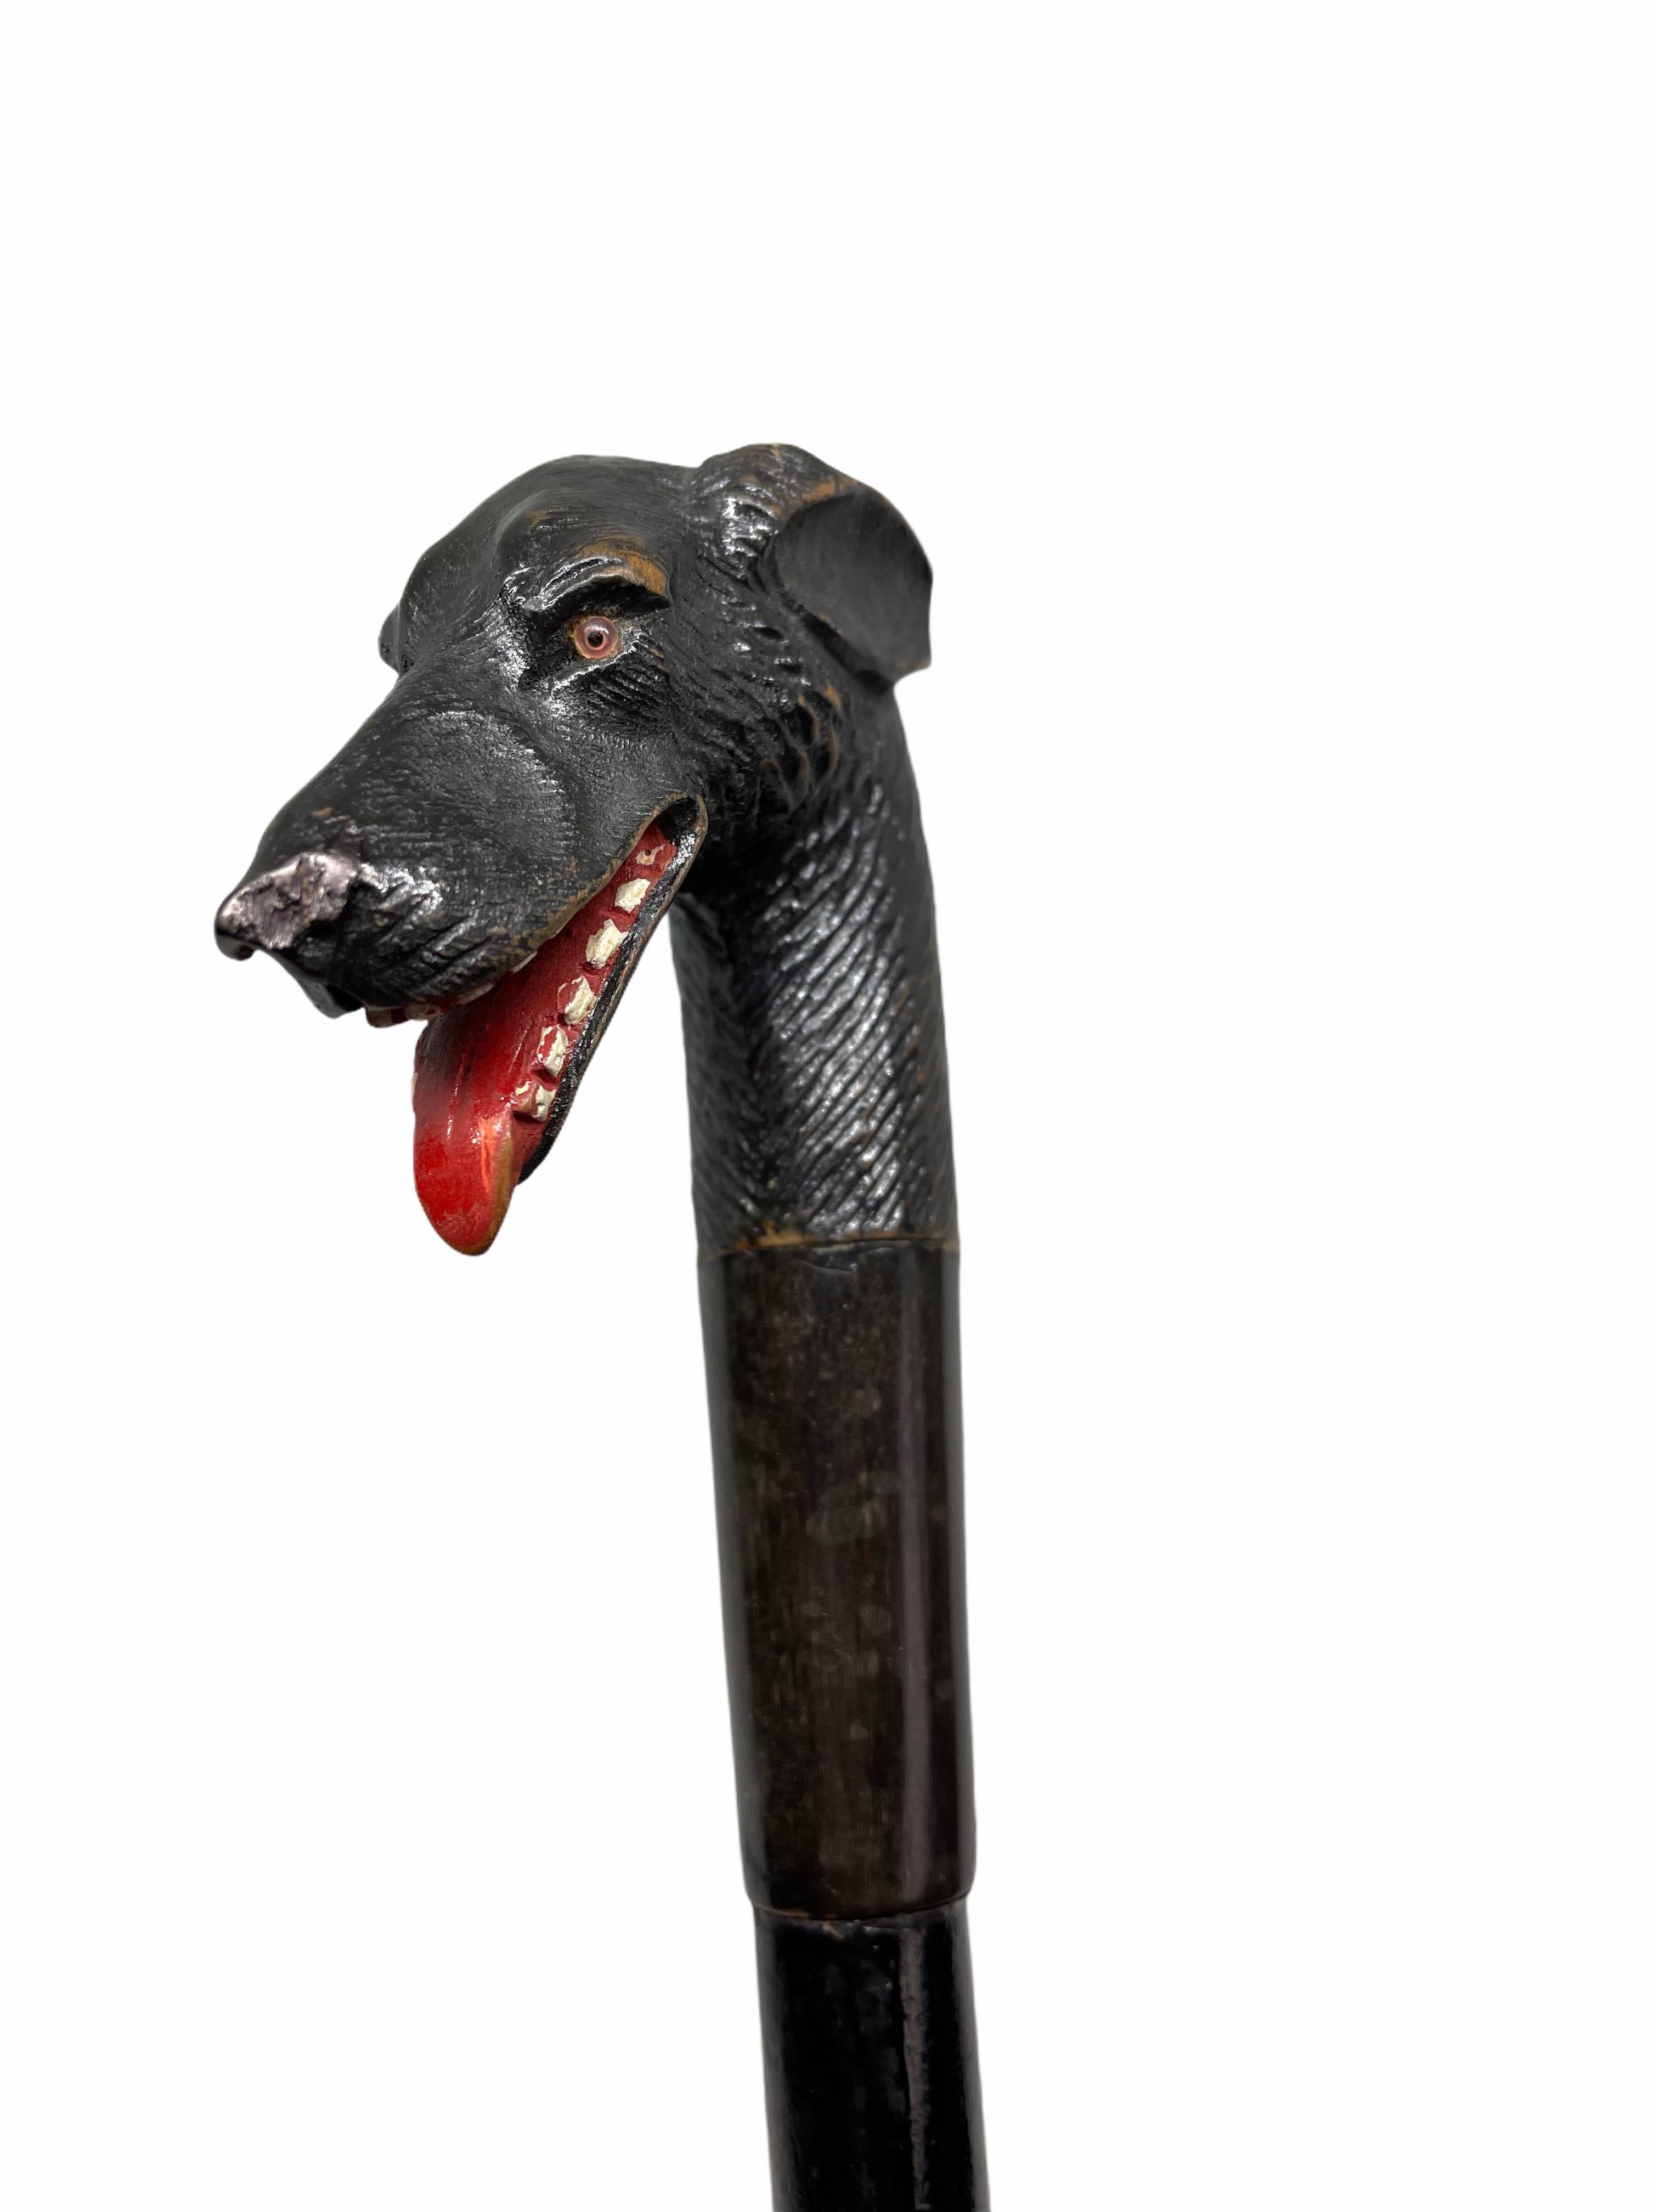 Parapluie classique du début des années 1910 en bois sculpté de Brienz (Forêt-Noire) avec poignée en forme de chien. Le chien a des yeux de verre. Un bel ajout à votre collection ou simplement pour l'utiliser. Fabriqué en bois sculpté à la main et